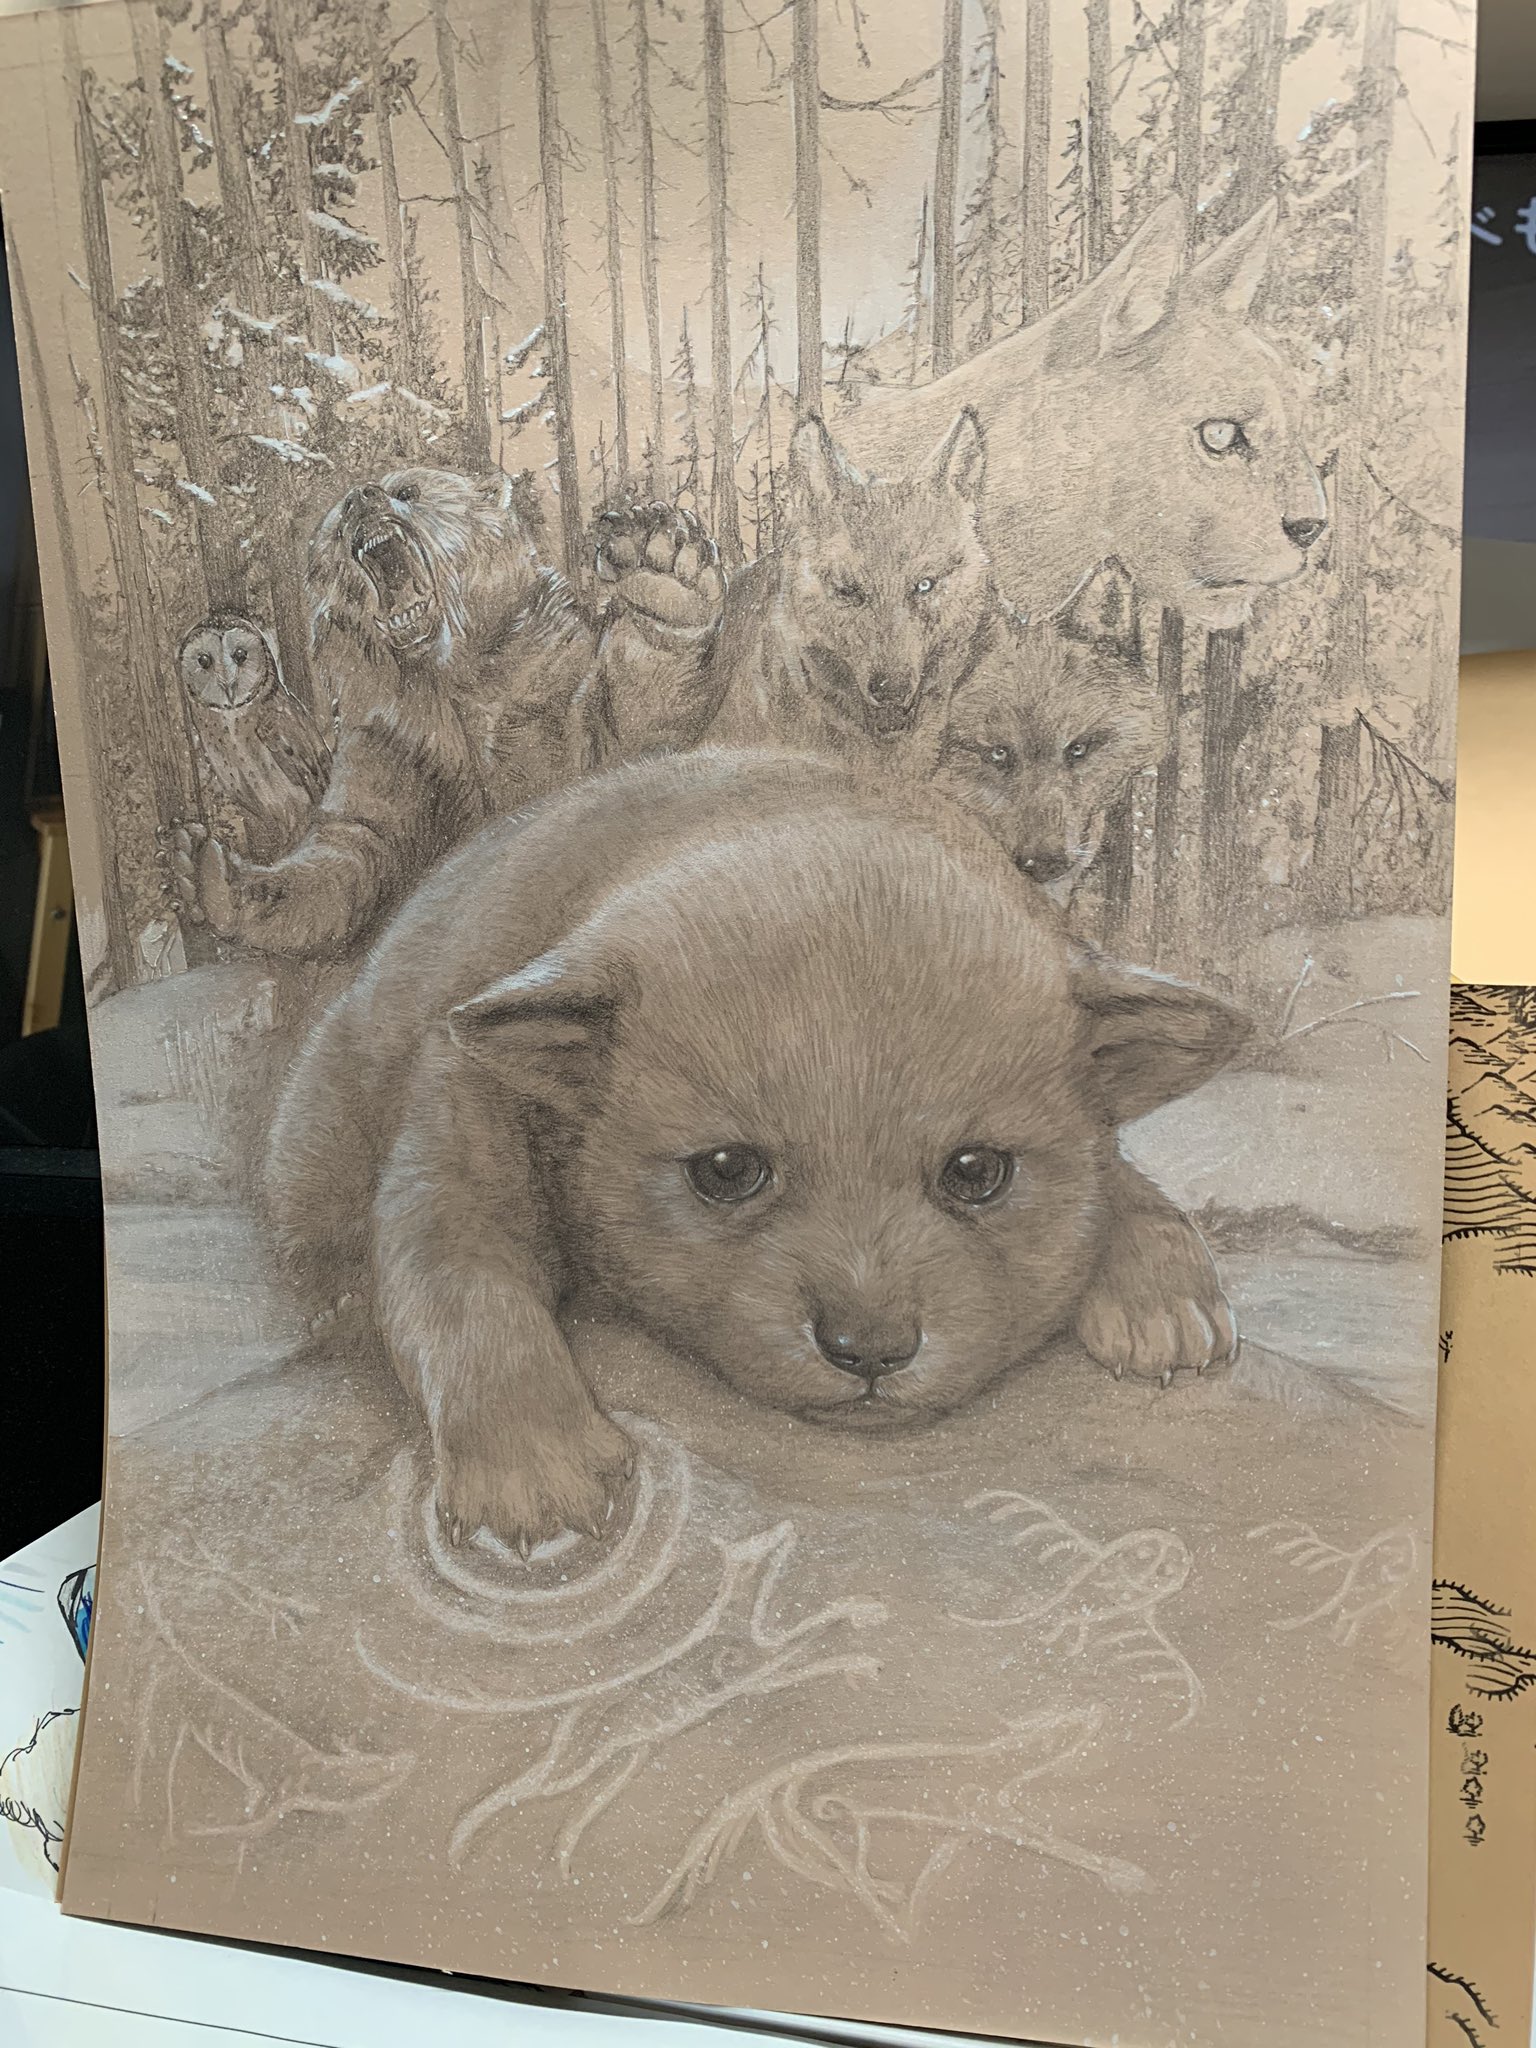 有田 満弘 イラストレーター ファオランの冒険 １巻カバー鉛筆画と完成 ガフールの勇者たち のスピンオフで オオカミたちがメインキャラクターのシリーズ 産まれてすぐのオオカミはオオカミに見えないので 描き方にとても苦労した のちに講演先で